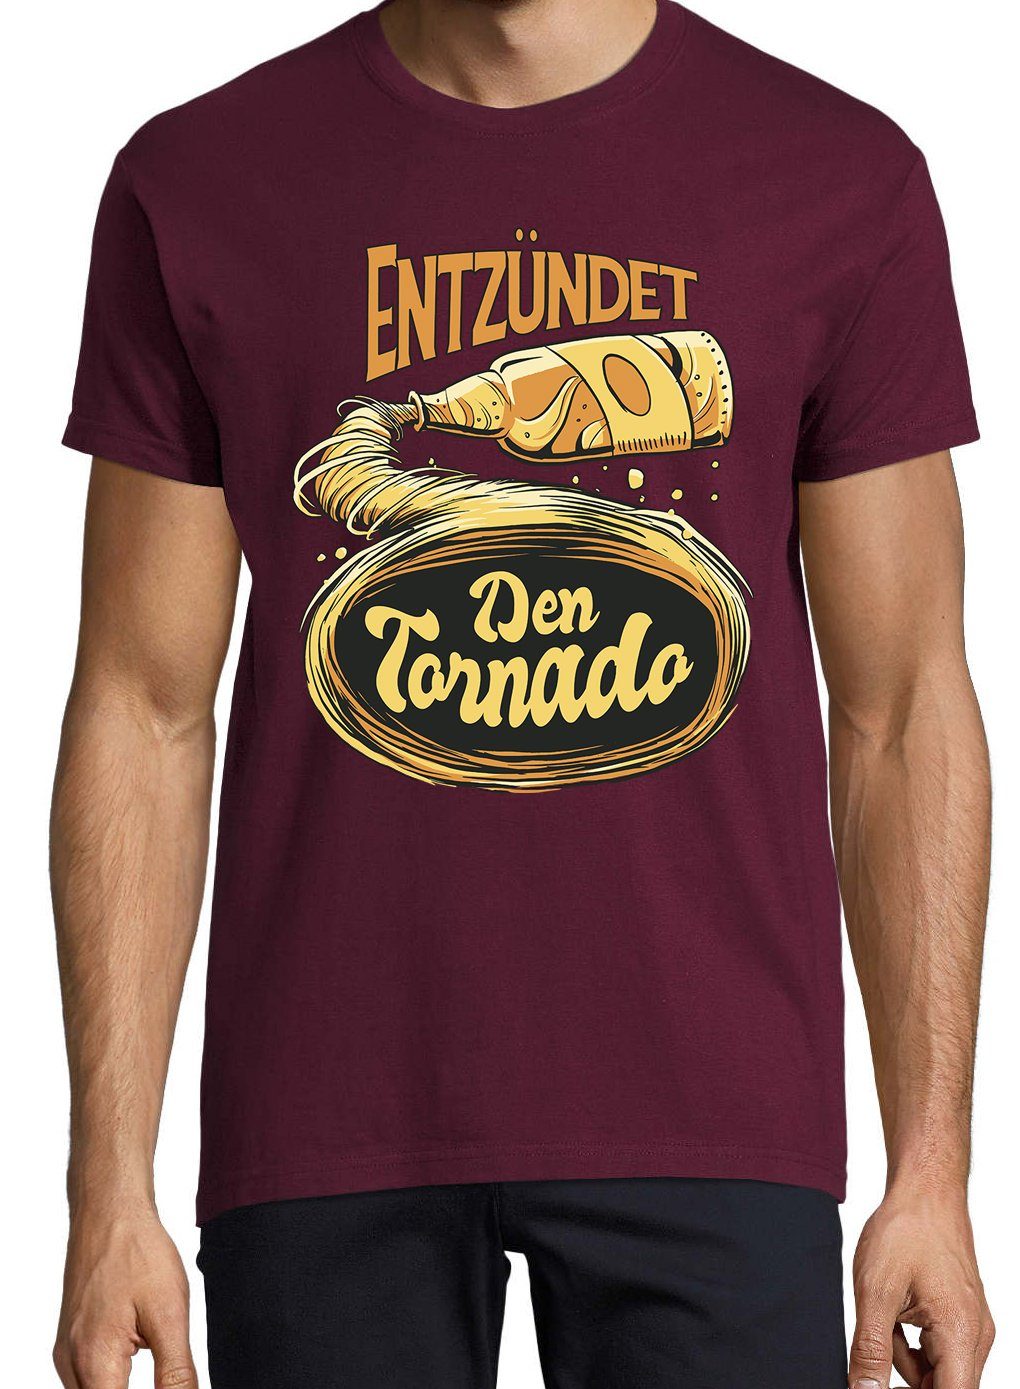 Youth Designz T-Shirt mit Den trendigem Bier Shirt Burgund Tornado! Frontprint Entzündet Herren